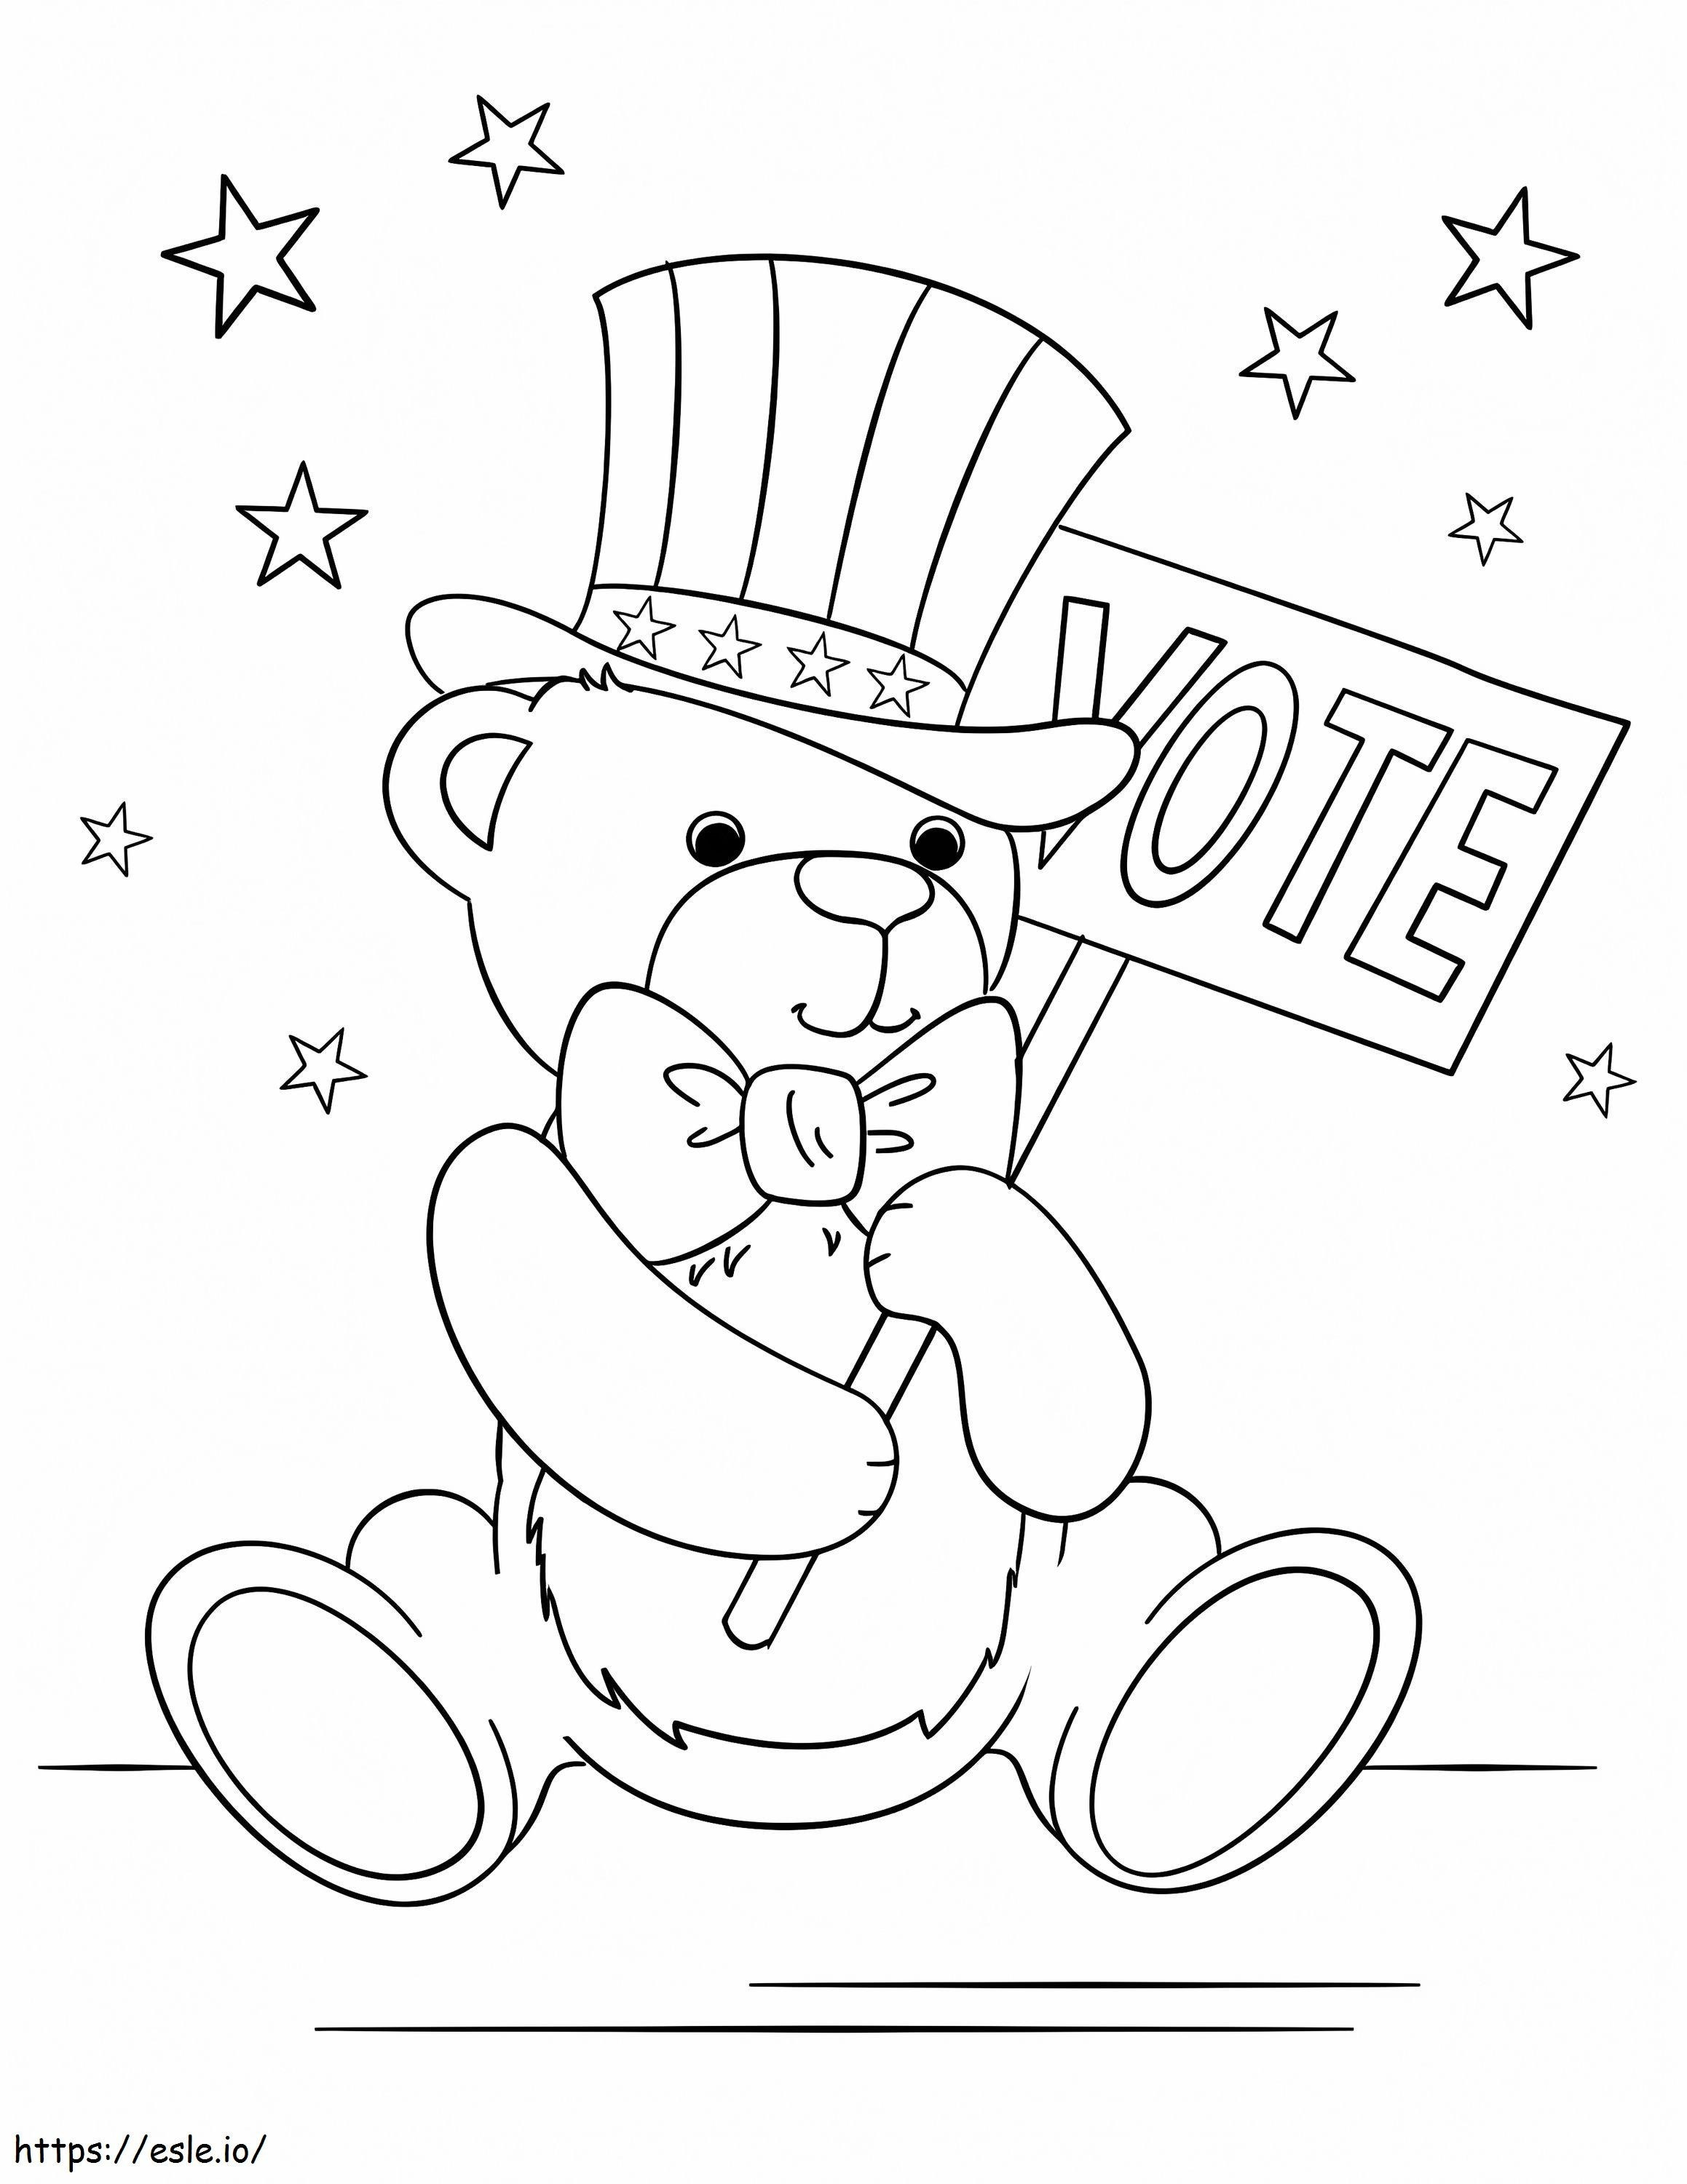 Patriotic Teddy Bear coloring page